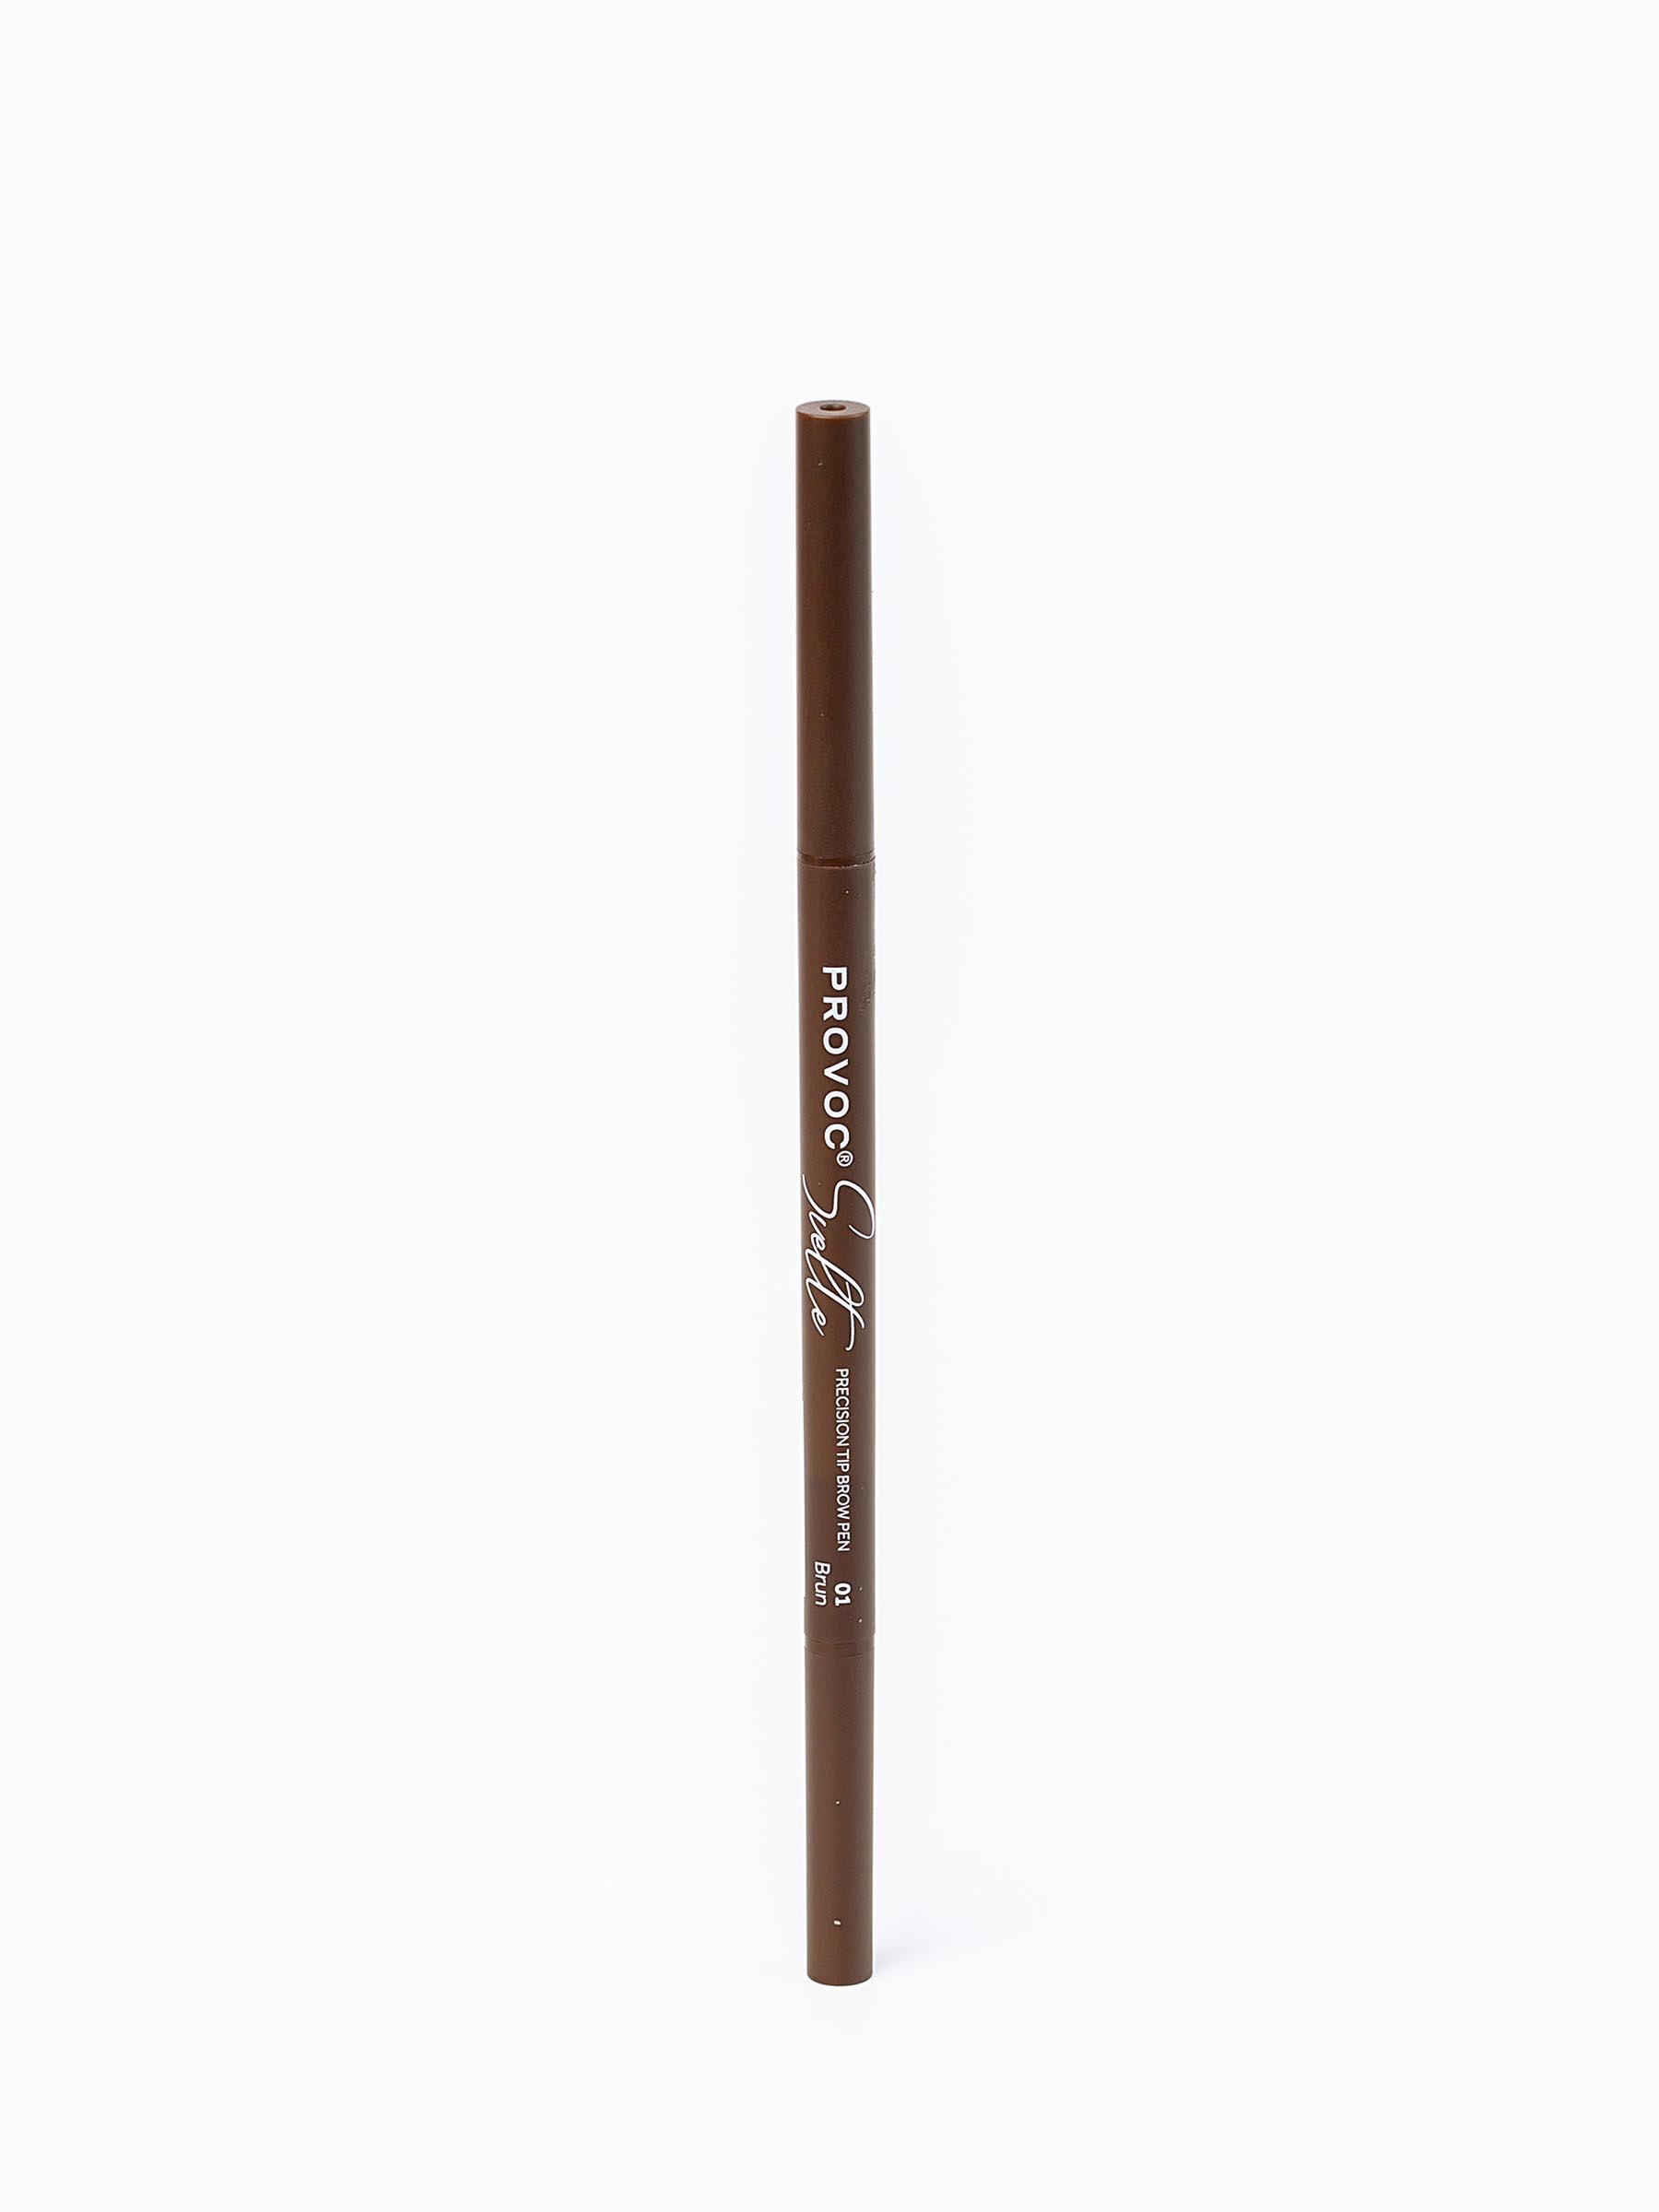 Ультратонкий карандаш для бровей Sawaya International LLC 01 коричневый карандаш для бровей eye brow pencil 6 087 02 2 темно коричневый 1 г